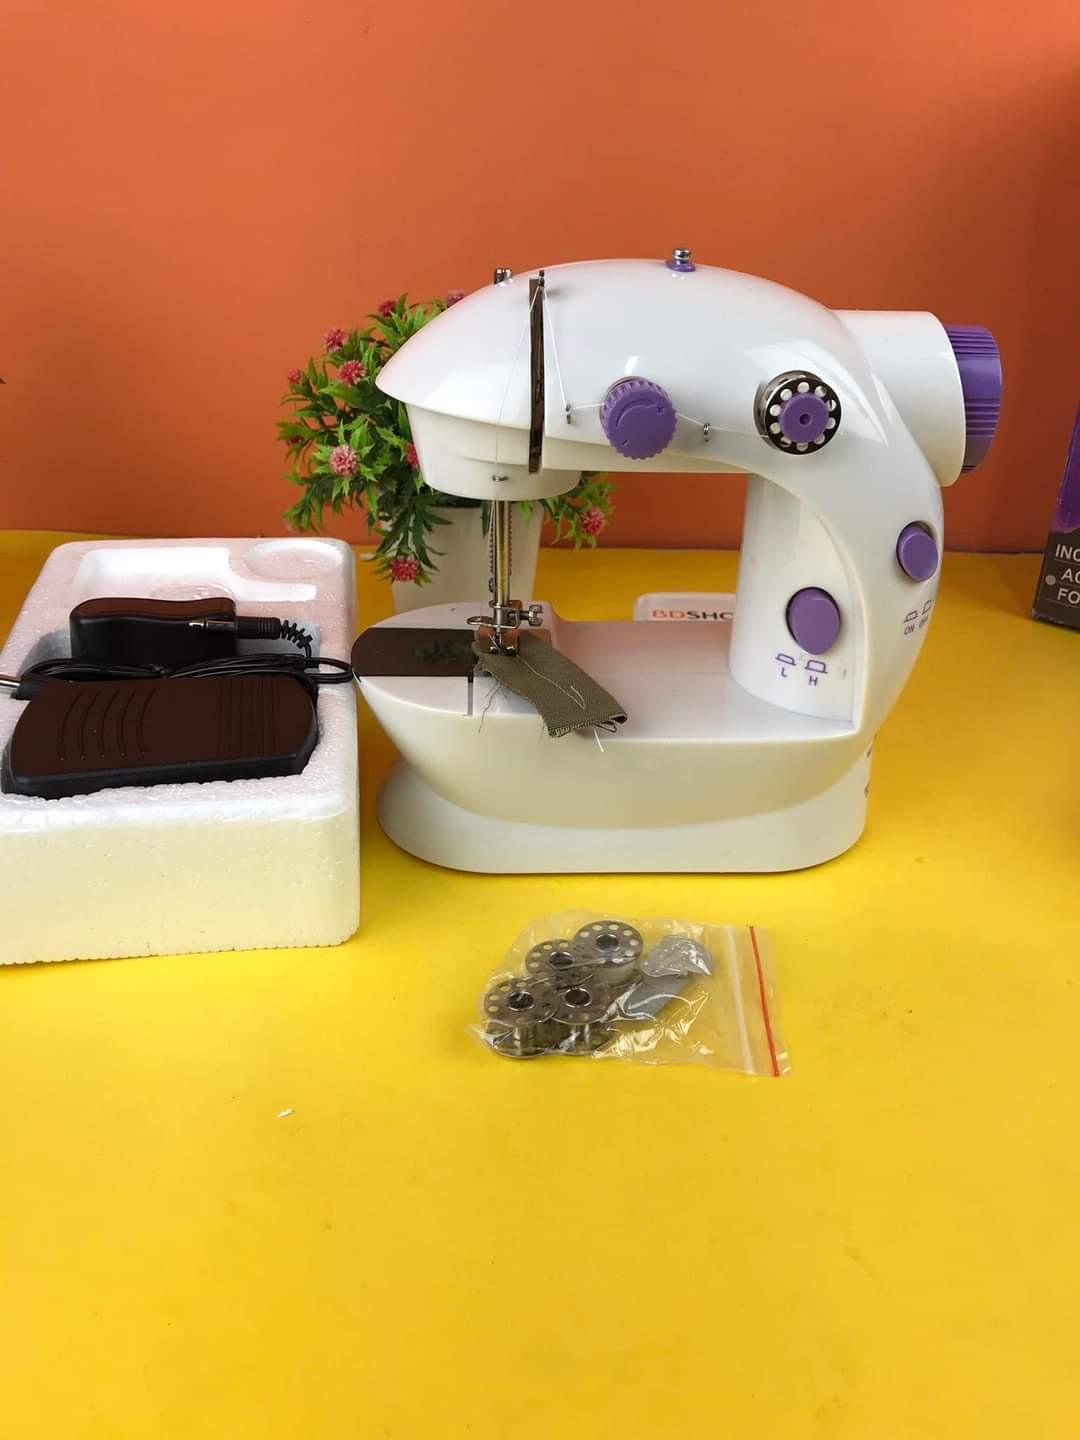 Hand sewing machine - HT Bazar